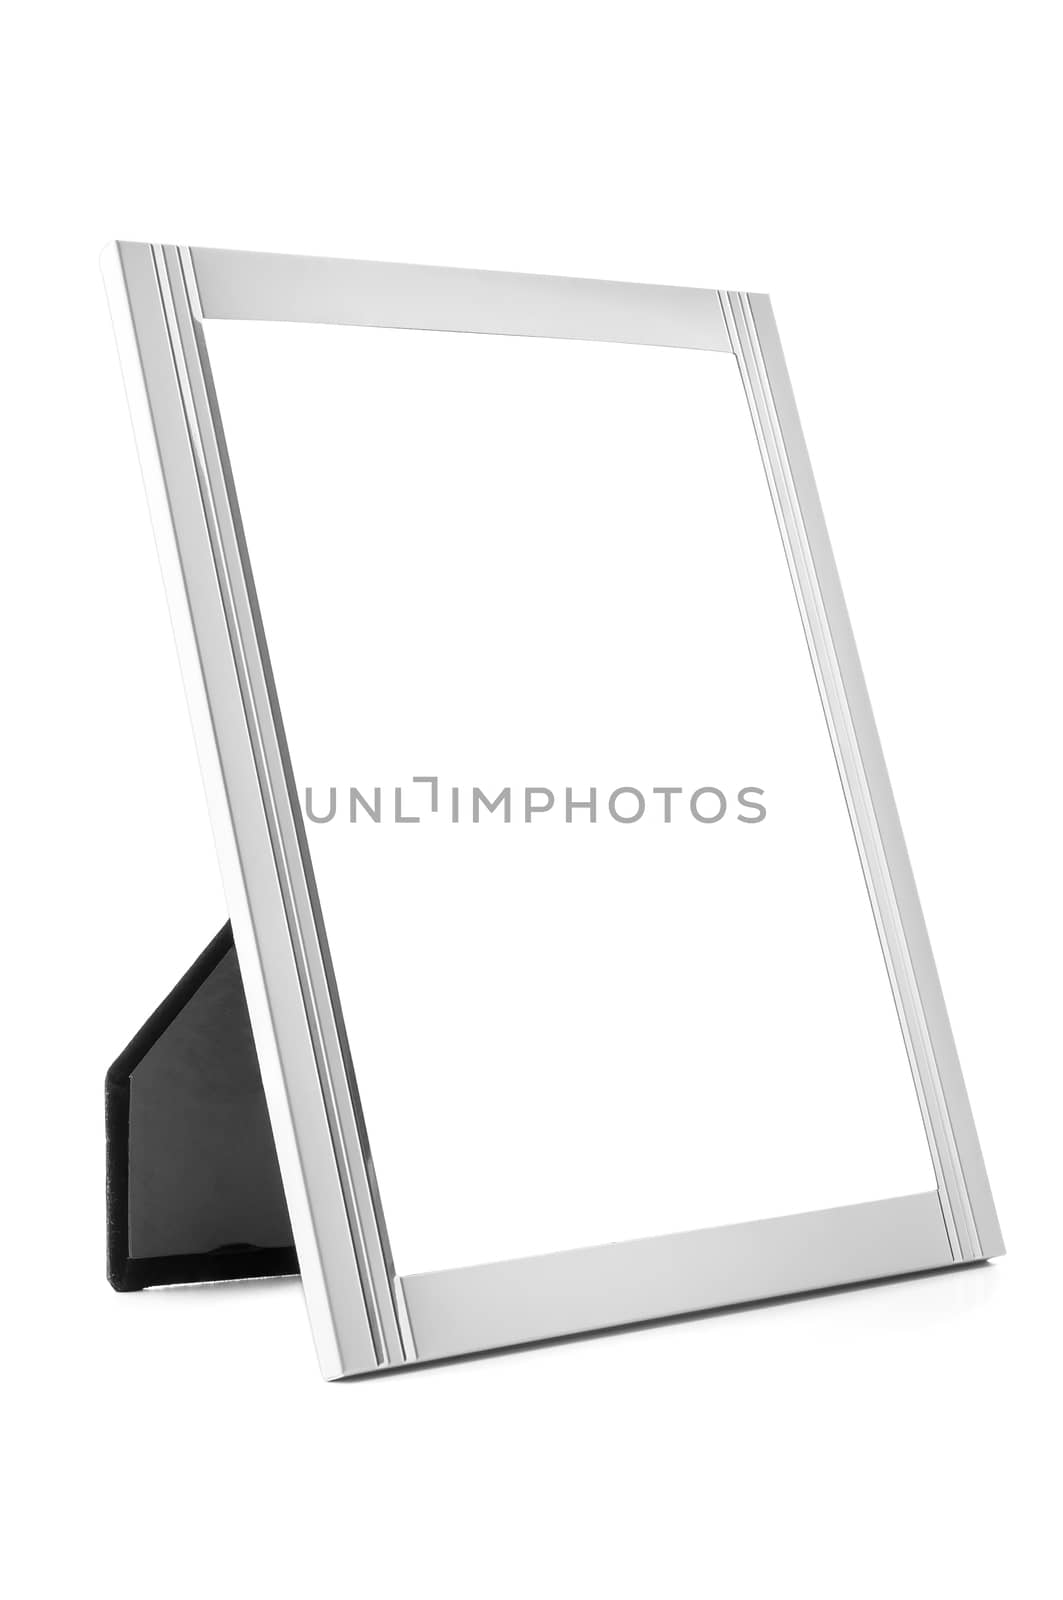 Aluminum decorative photo frame on white background by mkos83